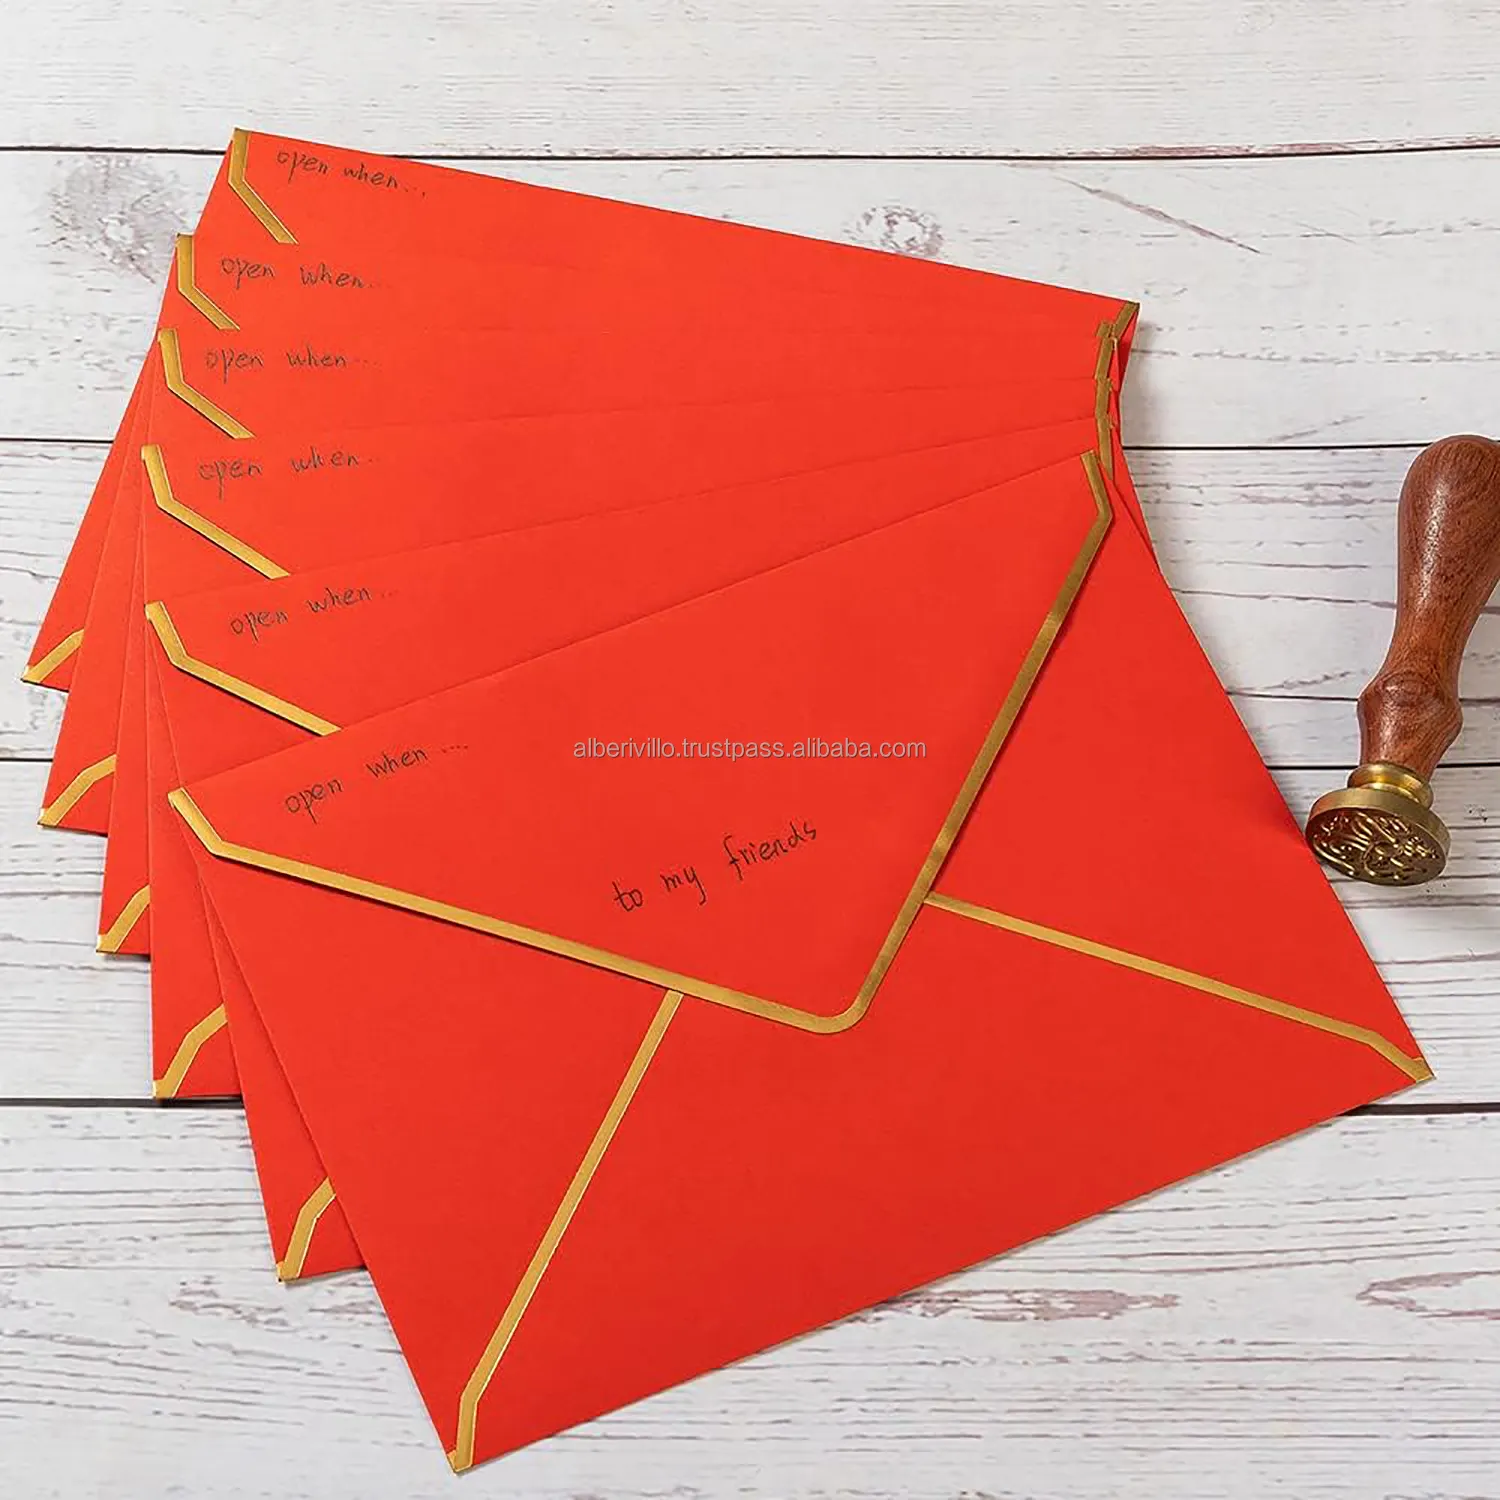 Sobre rojo para regalo de boda, accesorios de oficina, sobre de papel personalizado con forro dorado de alta calidad de la India